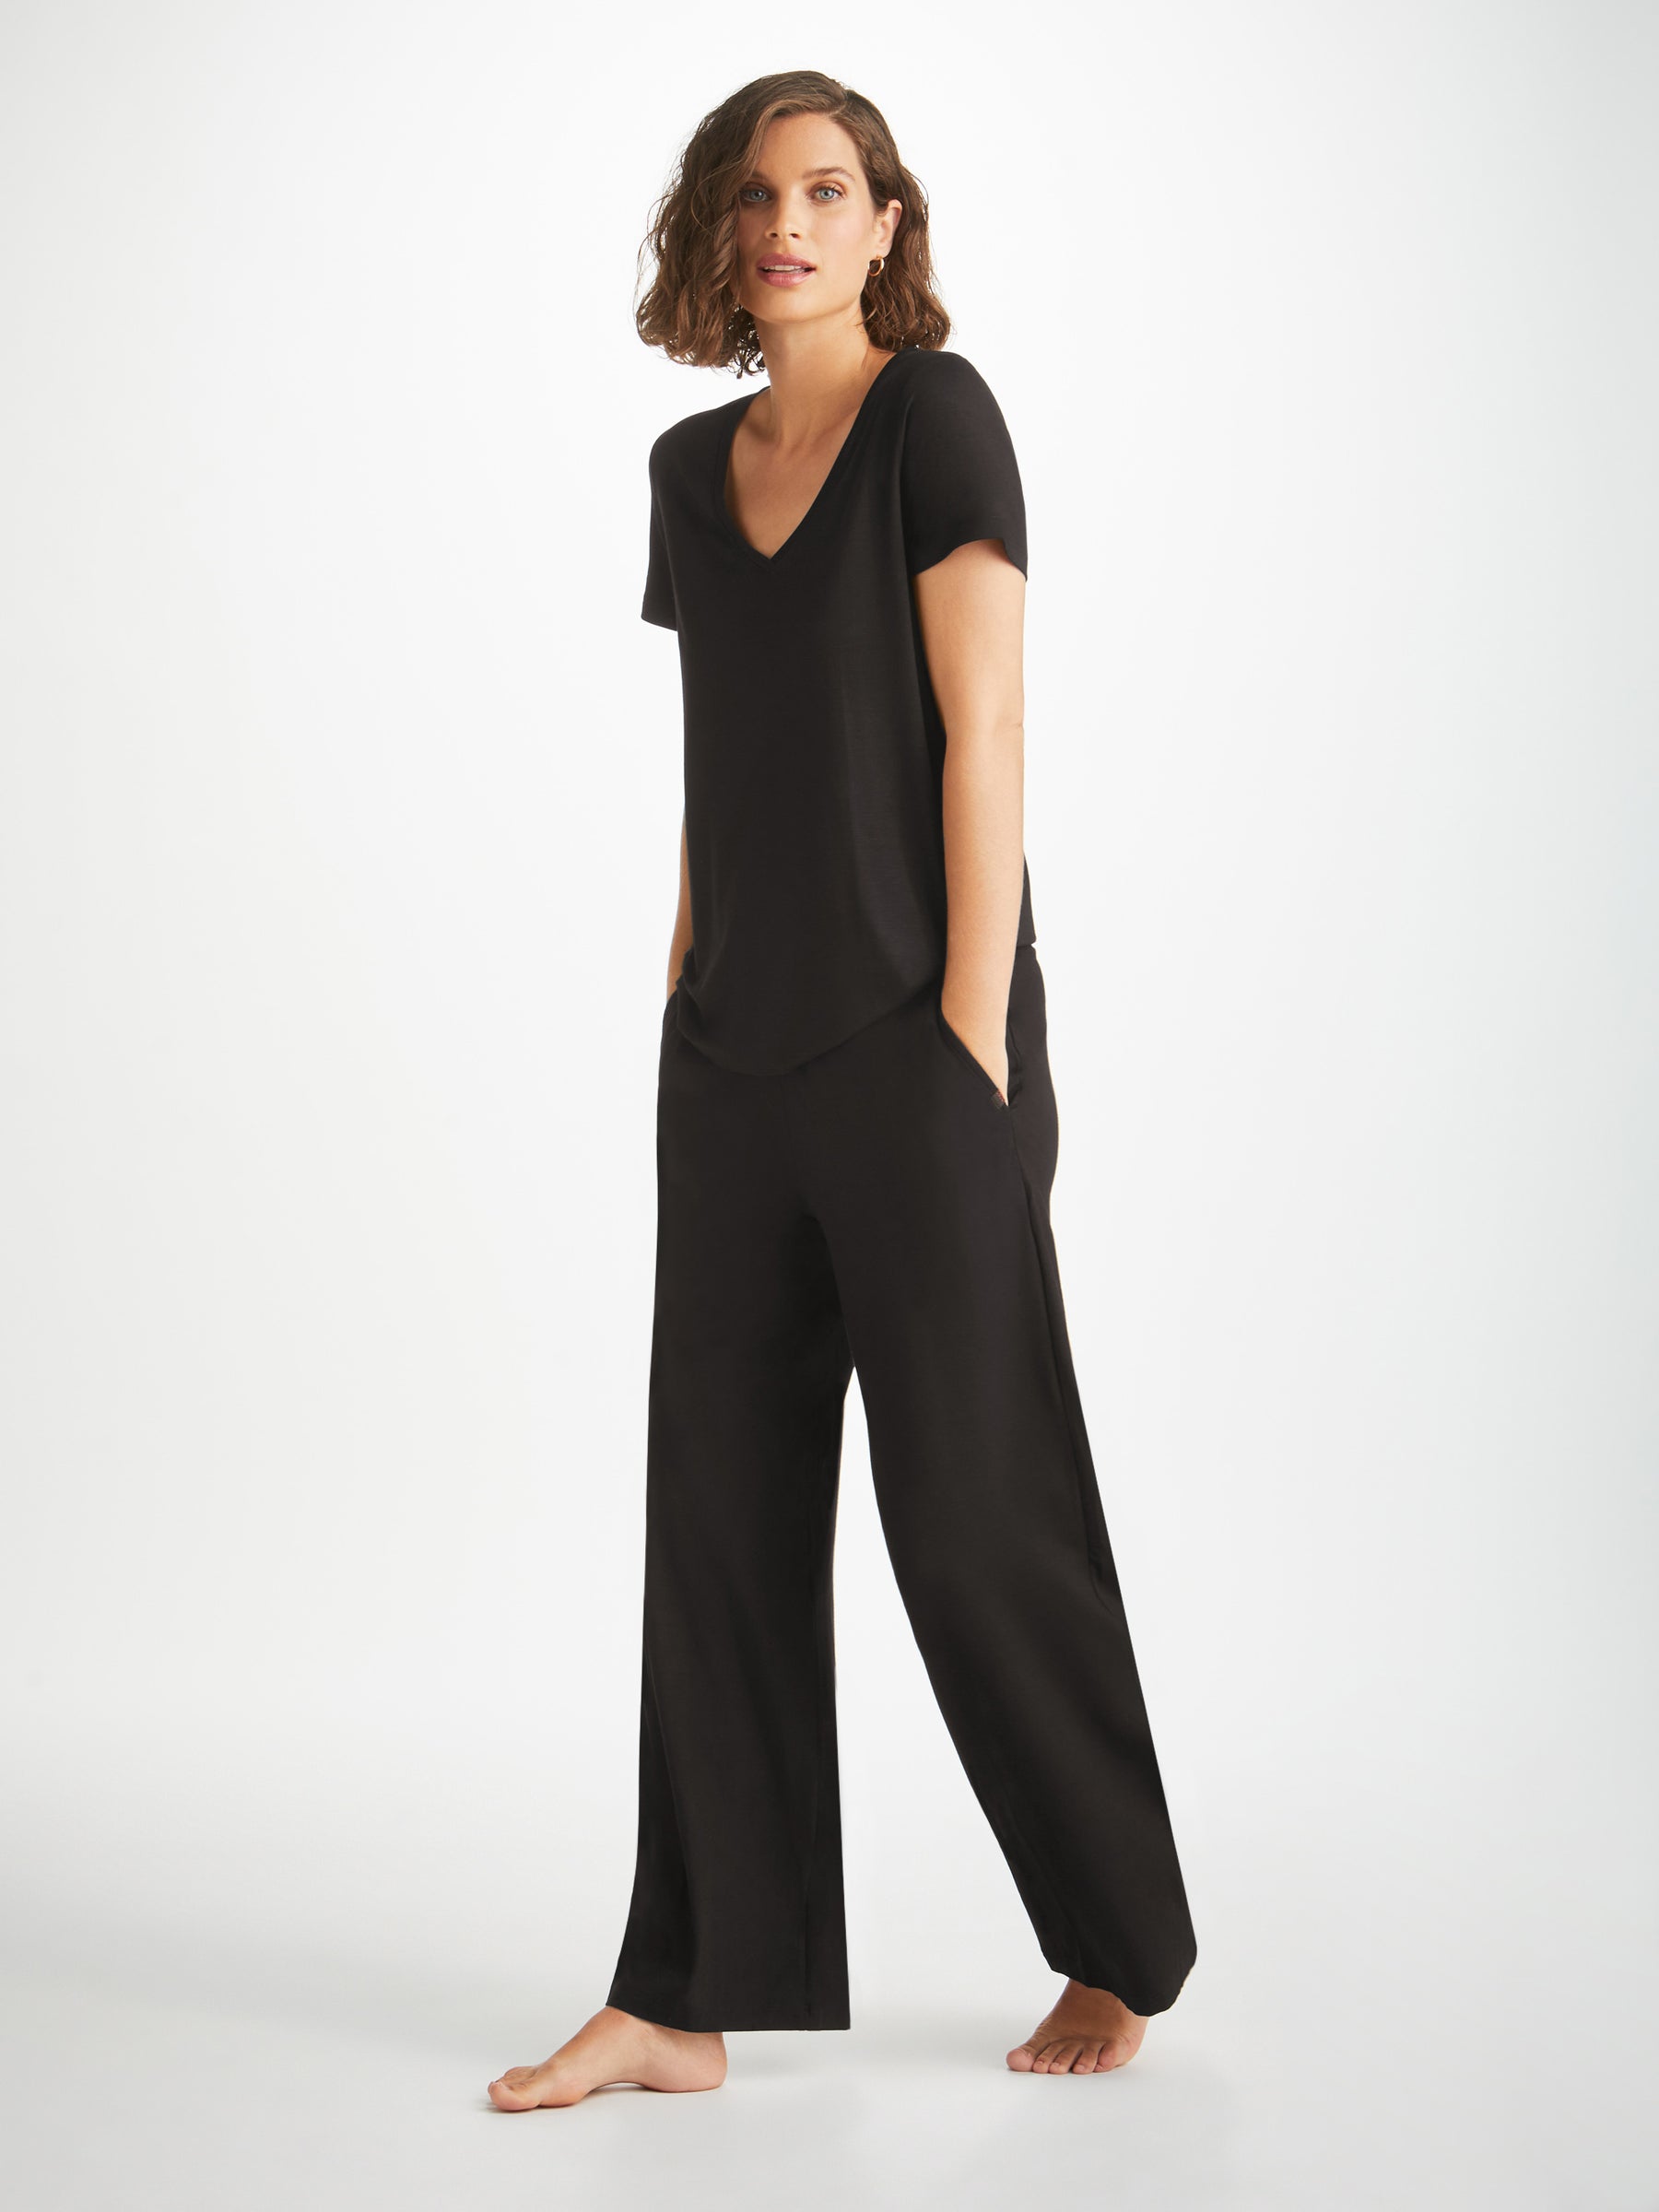 Women's Lounge Trousers Basel Micro Modal Stretch Black